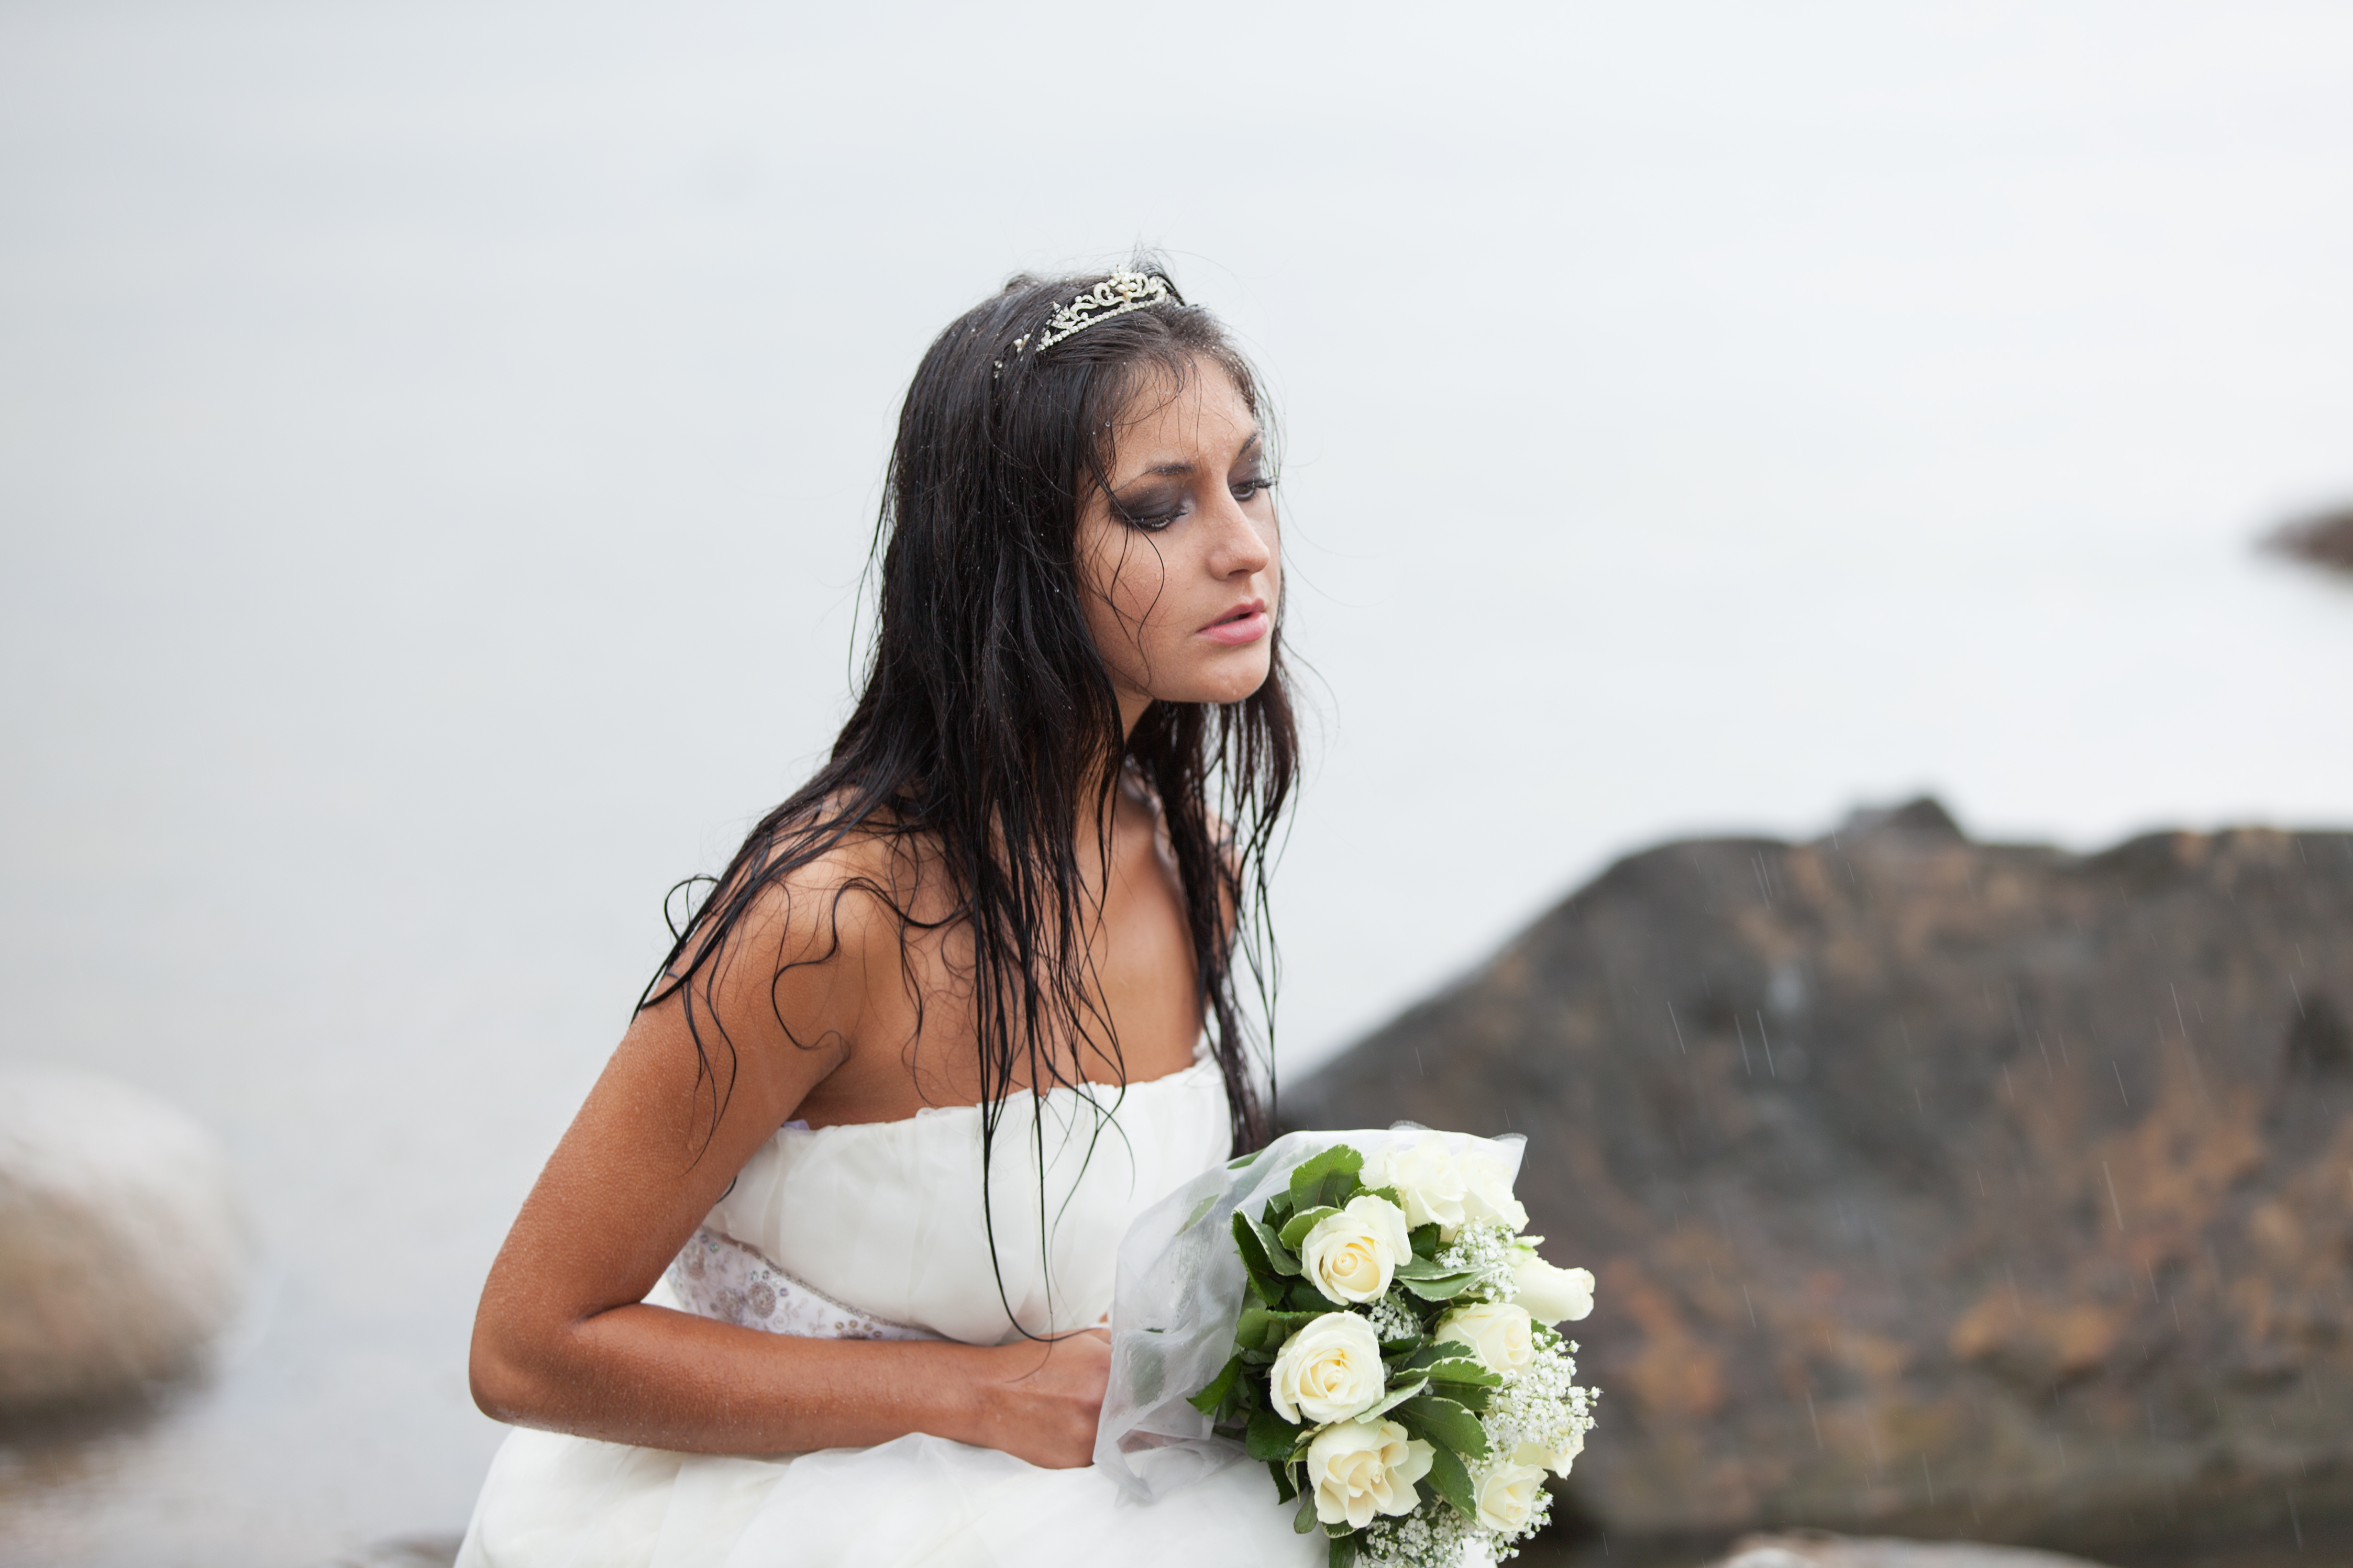 Soaking wet bride | Source: Shutterstock